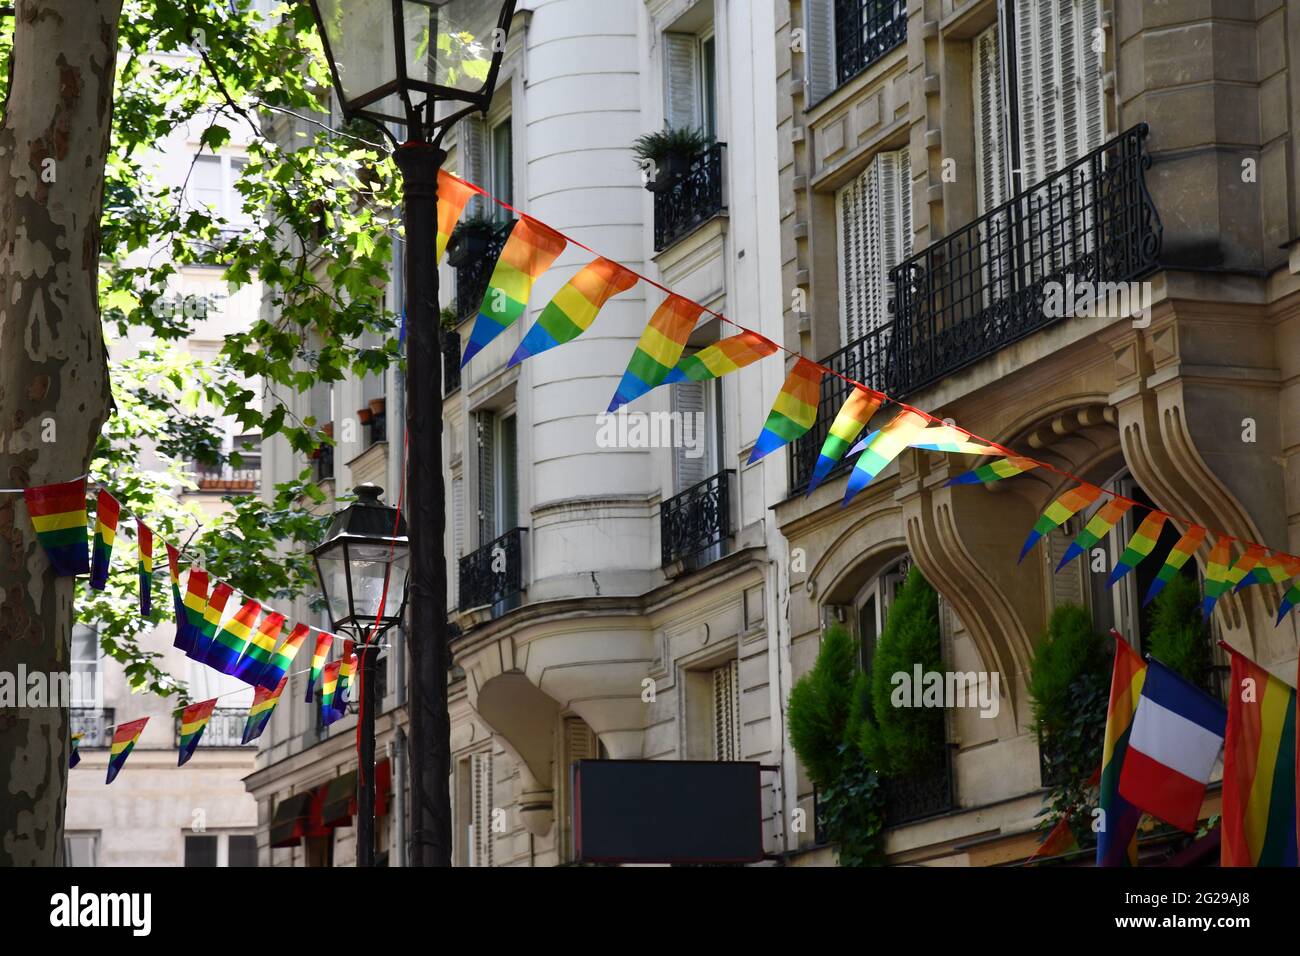 Décoration de bannières en forme de triangle dans les couleurs des drapeaux LGBTQ accrochés entre lanternes d'époque et maison ornée avec balcons. Fierté gay Banque D'Images